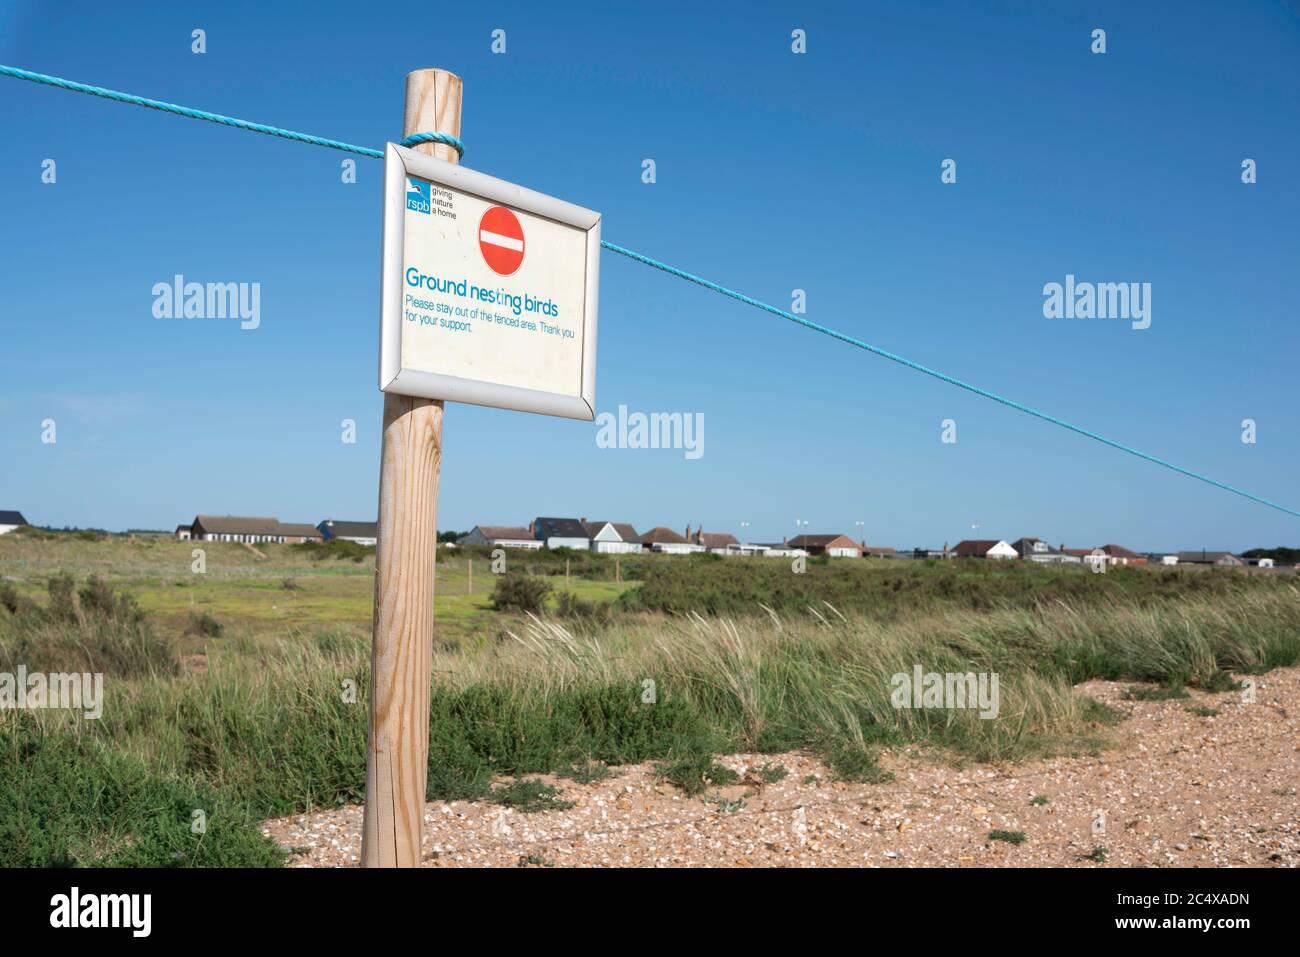 Snettisham Nature Reserve, Blick auf ein RSPB-Schild, das Vorsicht in der Nähe von Nistvögeln fordert, Snettisham Beach, Norfolk, England, Großbritannien Stockfoto